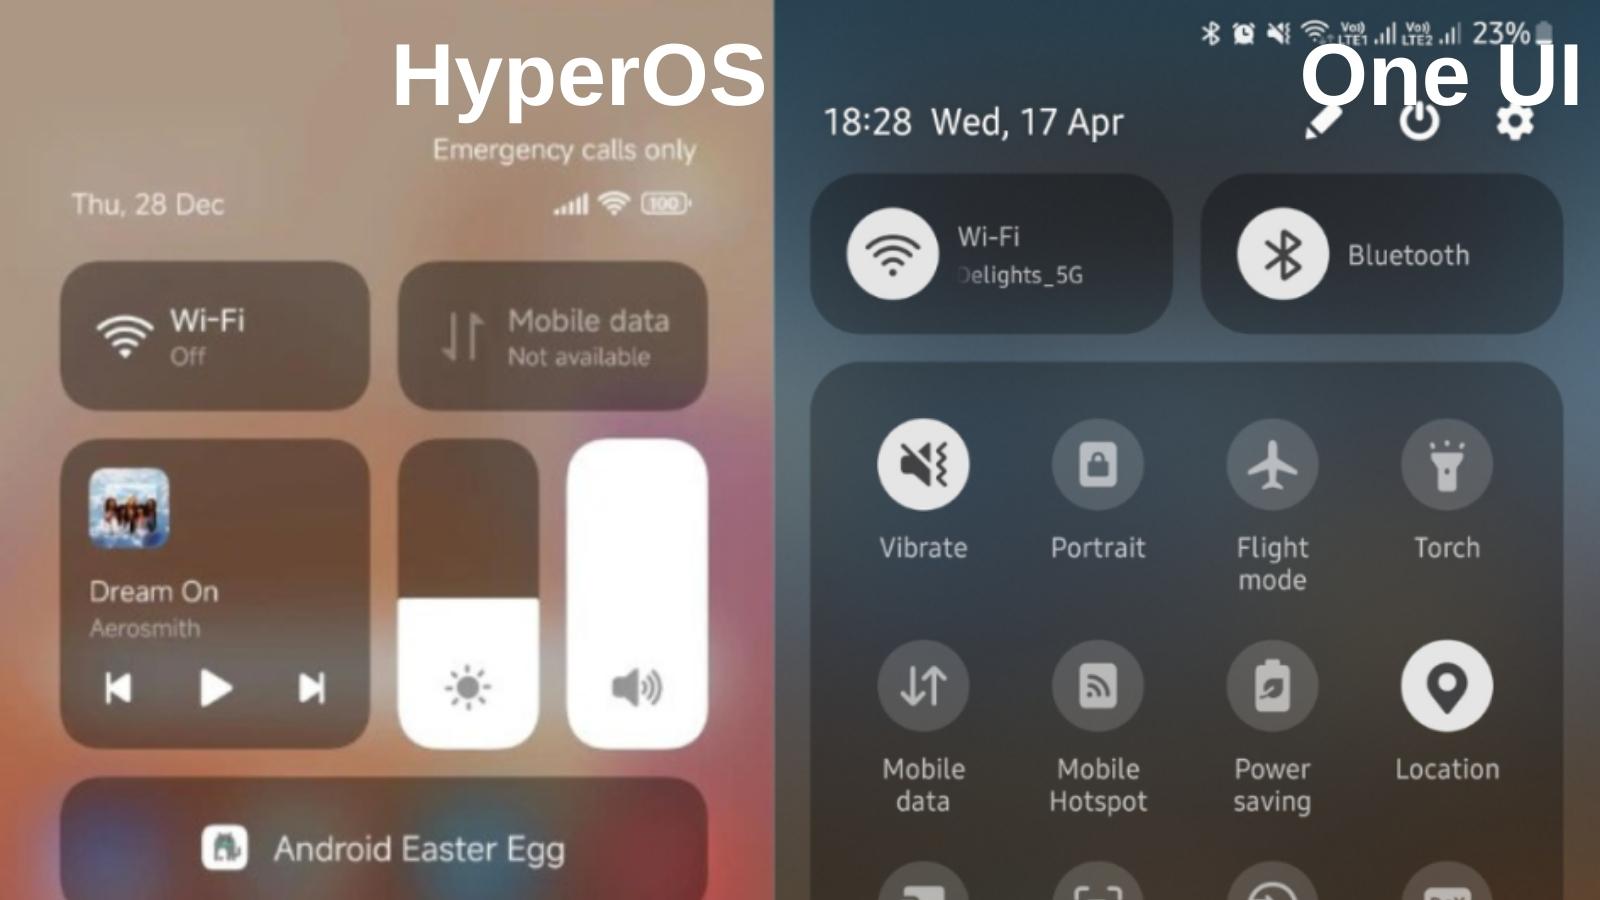 HyperOS ve One UI Arasındaki 7 Temel Fark